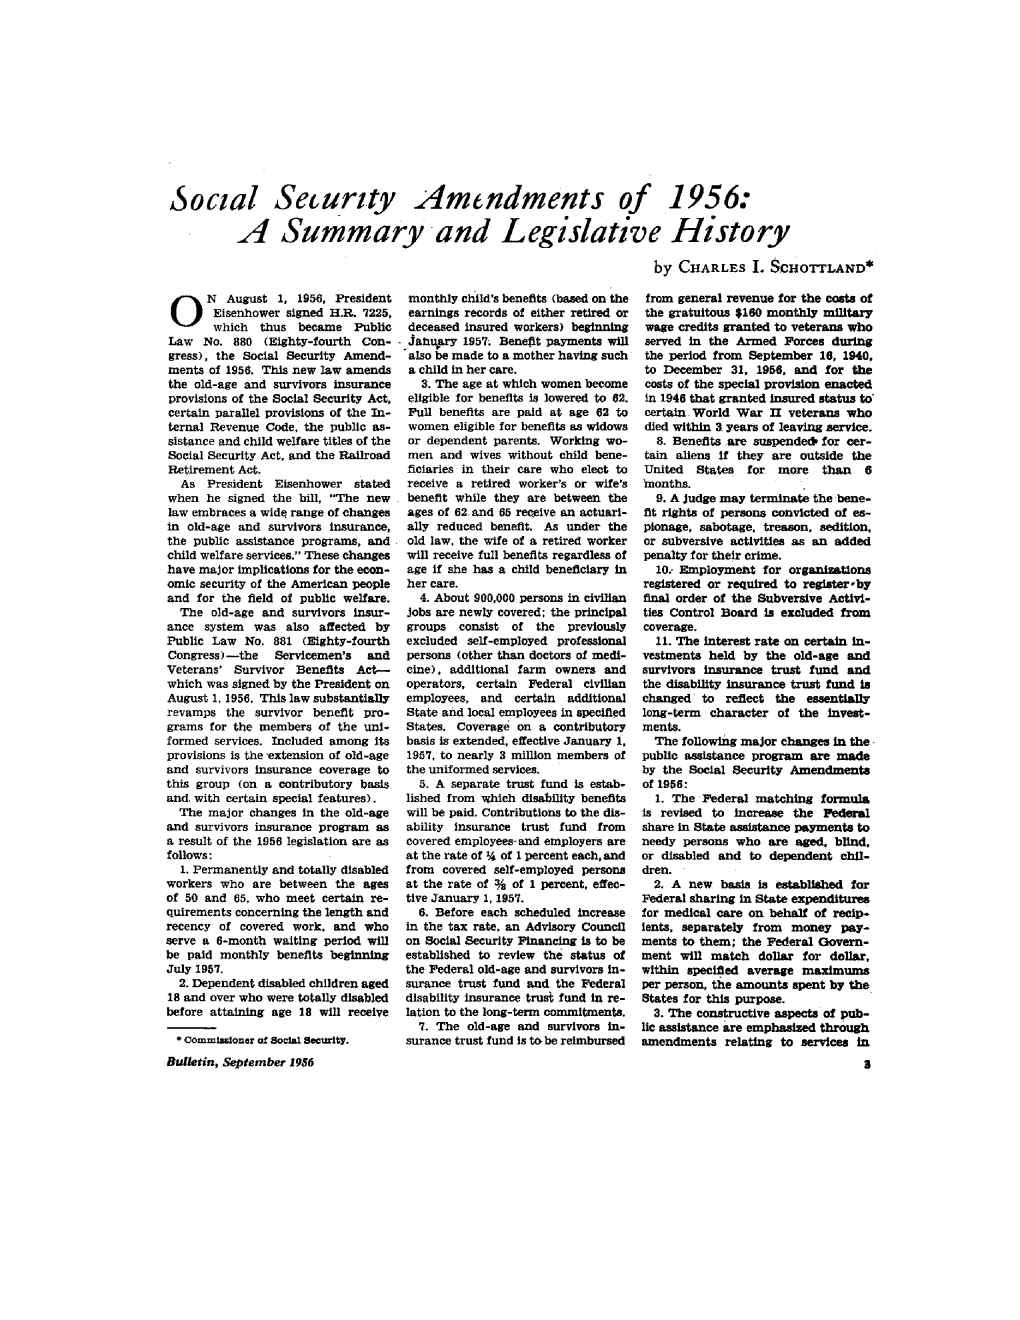 Social Security Amendments of 1956: a Summary and Legislative History